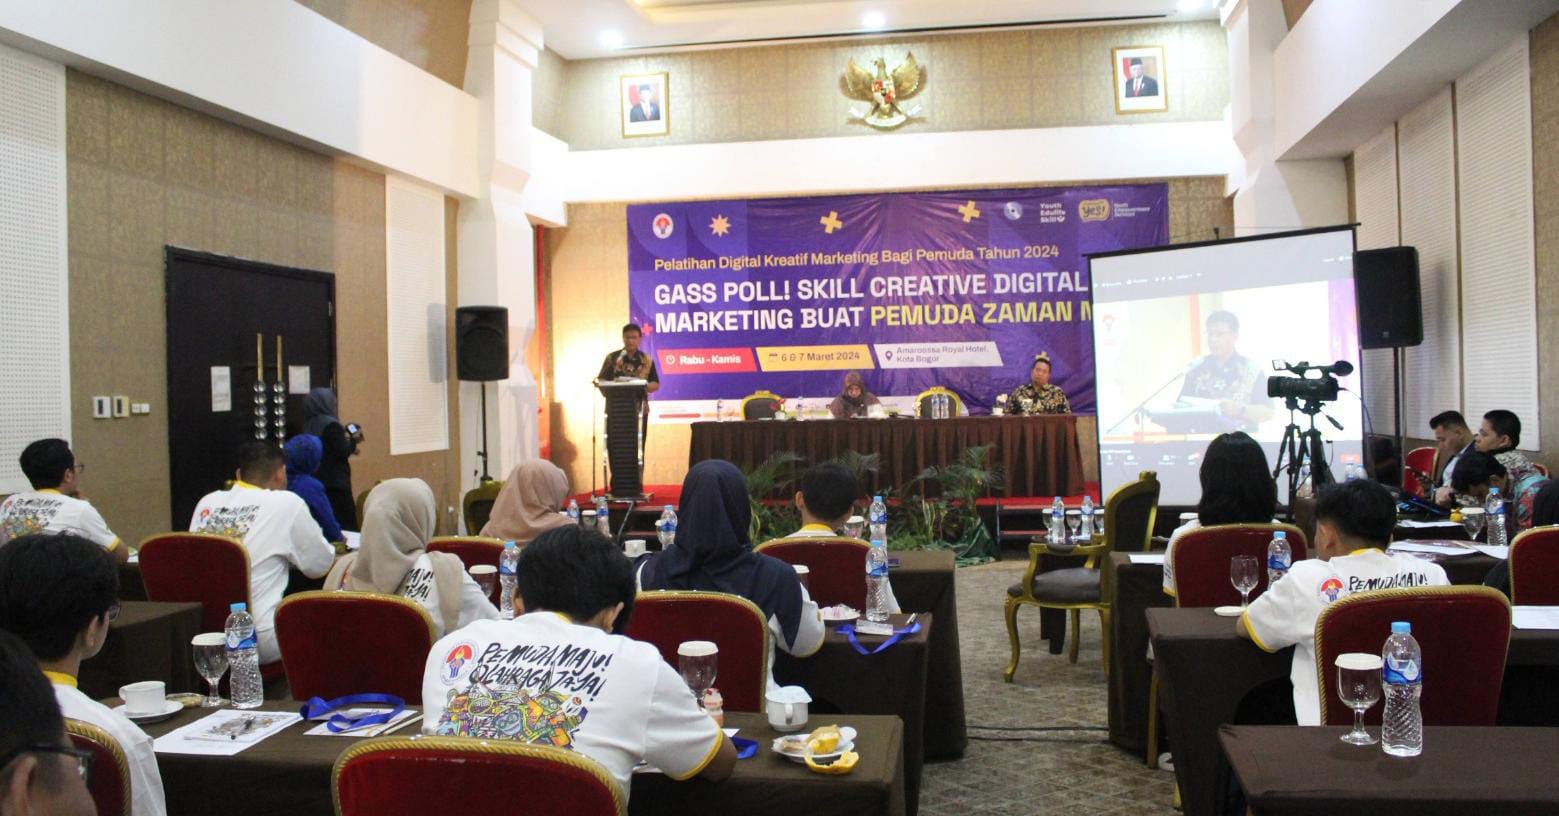 Pelatihan Digital Kreatif Marketing Bagi Pemuda 2024: Membangun Generasi Pemasar Digital yang Kreatif